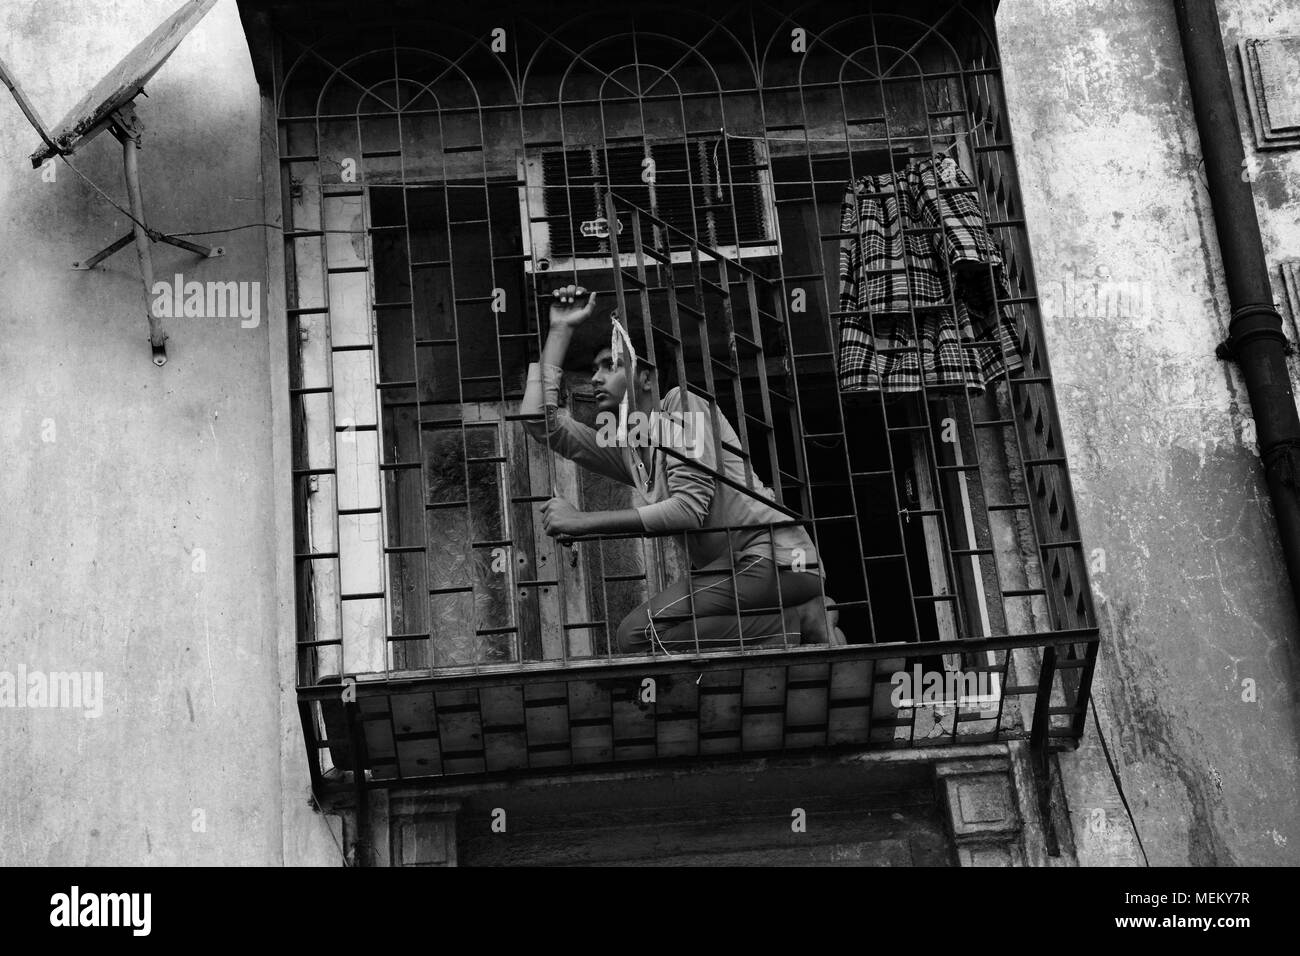 Junger Mann auf einem eingesperrten Balkon, Margao, Goa, Indien. Er sieht irgendwie hoffnungsvoll, als ob der Traum von einer besseren Zukunft, aus seiner Umgebung. Stockfoto